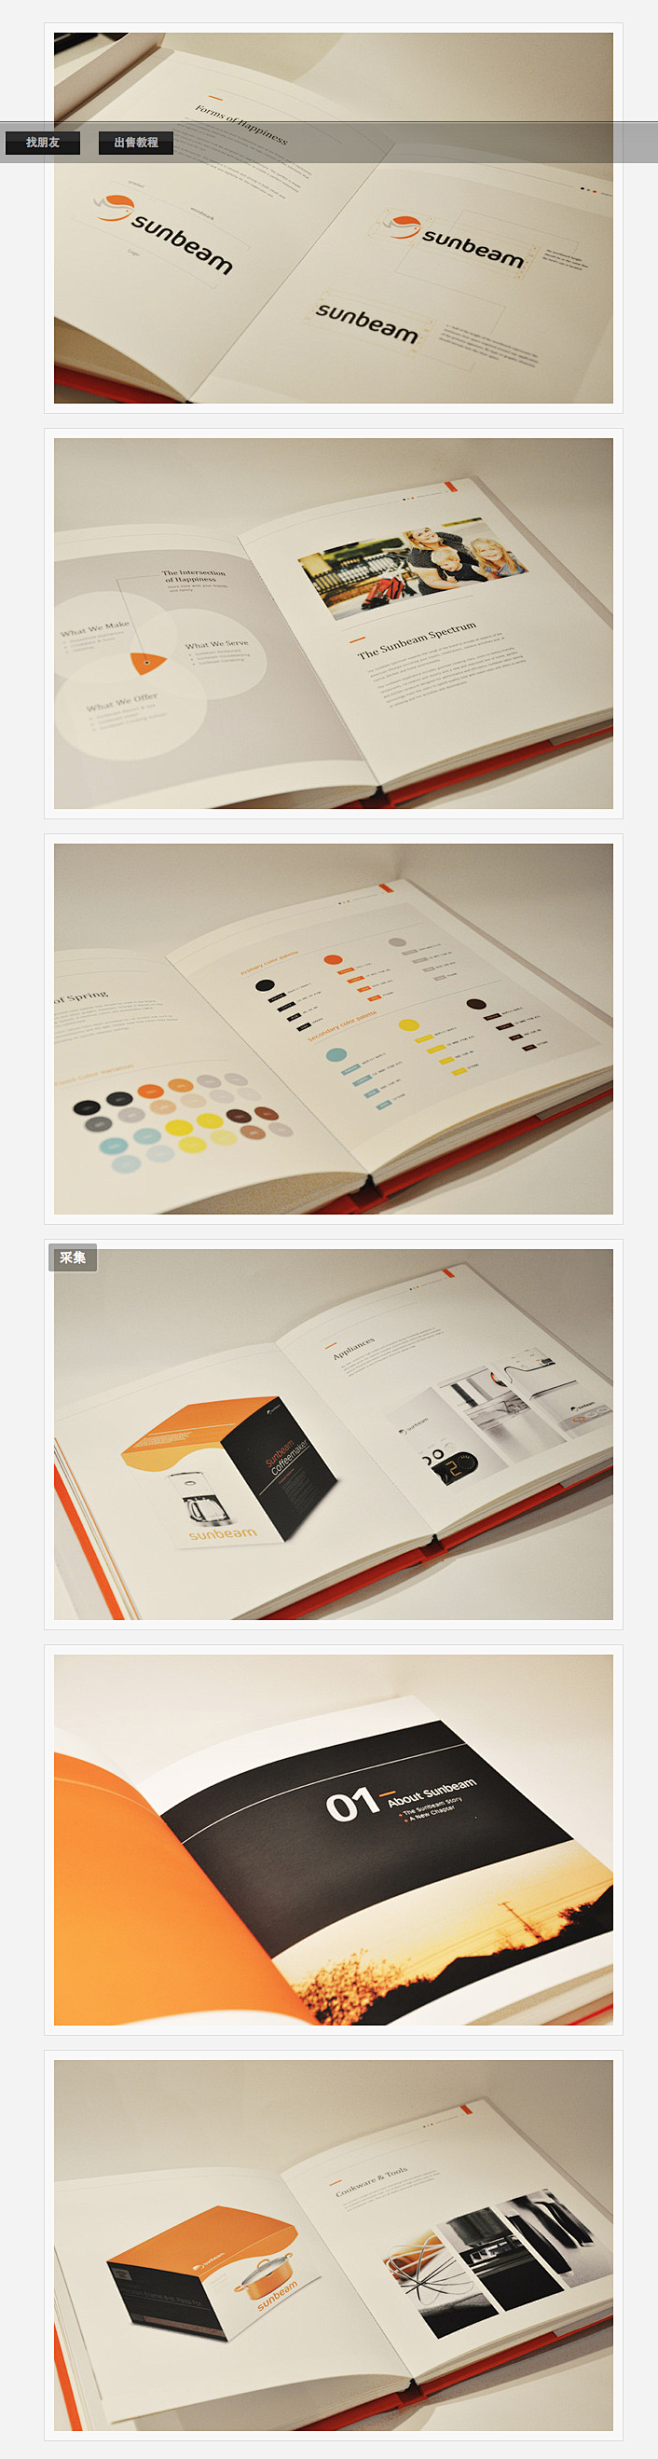 产品介绍画册设计 - 第2页 - 画册设...